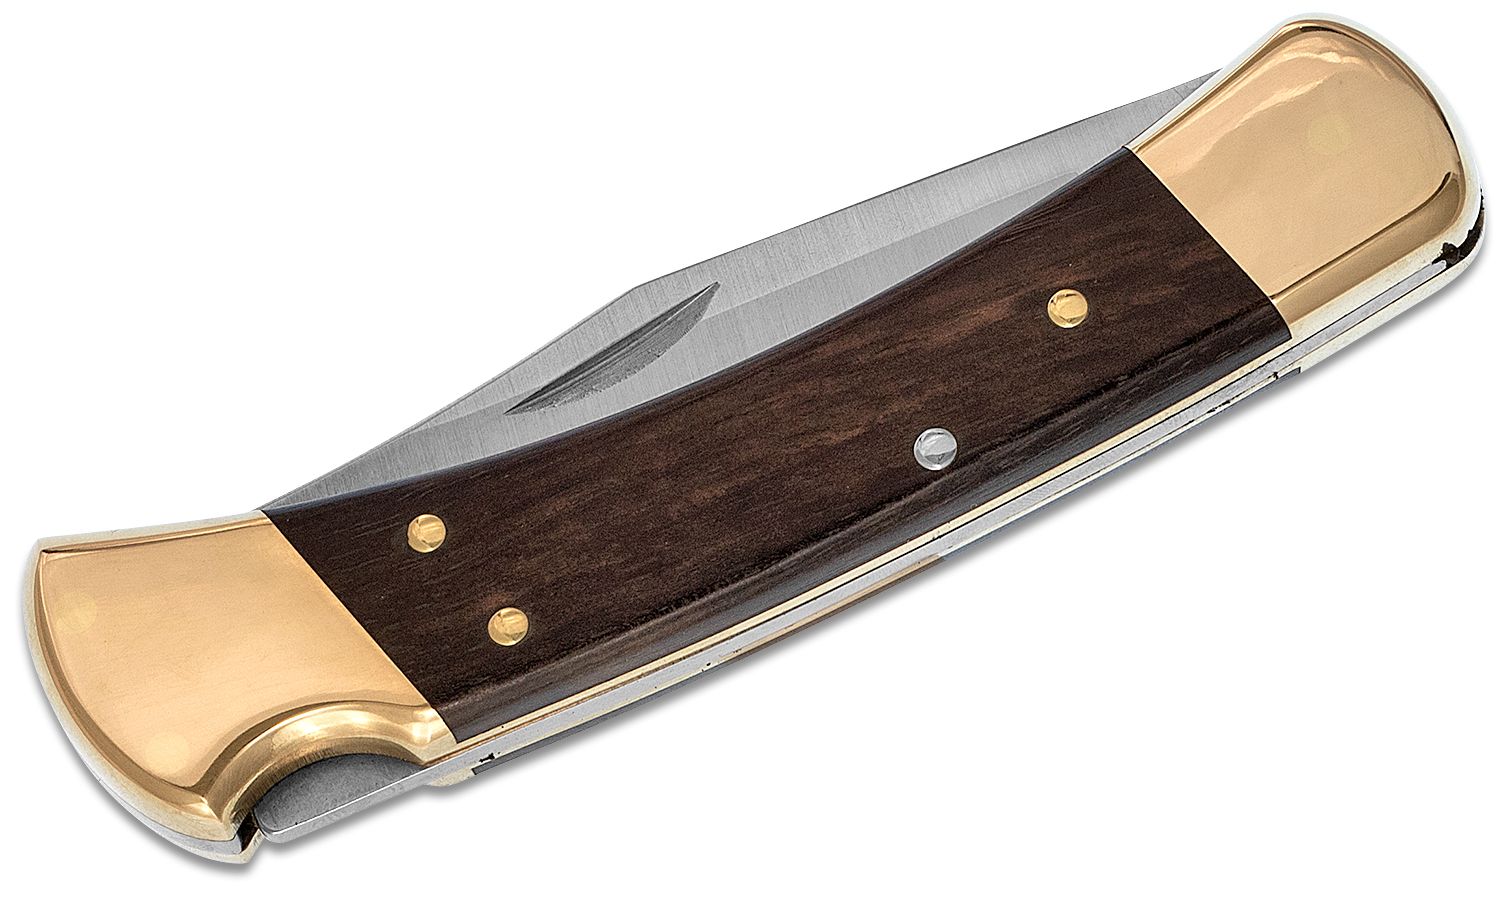 Buck 110 Folding Hunter LT 3.75 Plain Blade, Black Nylon Handles,  Polyester Sheath - KnifeCenter - 11553